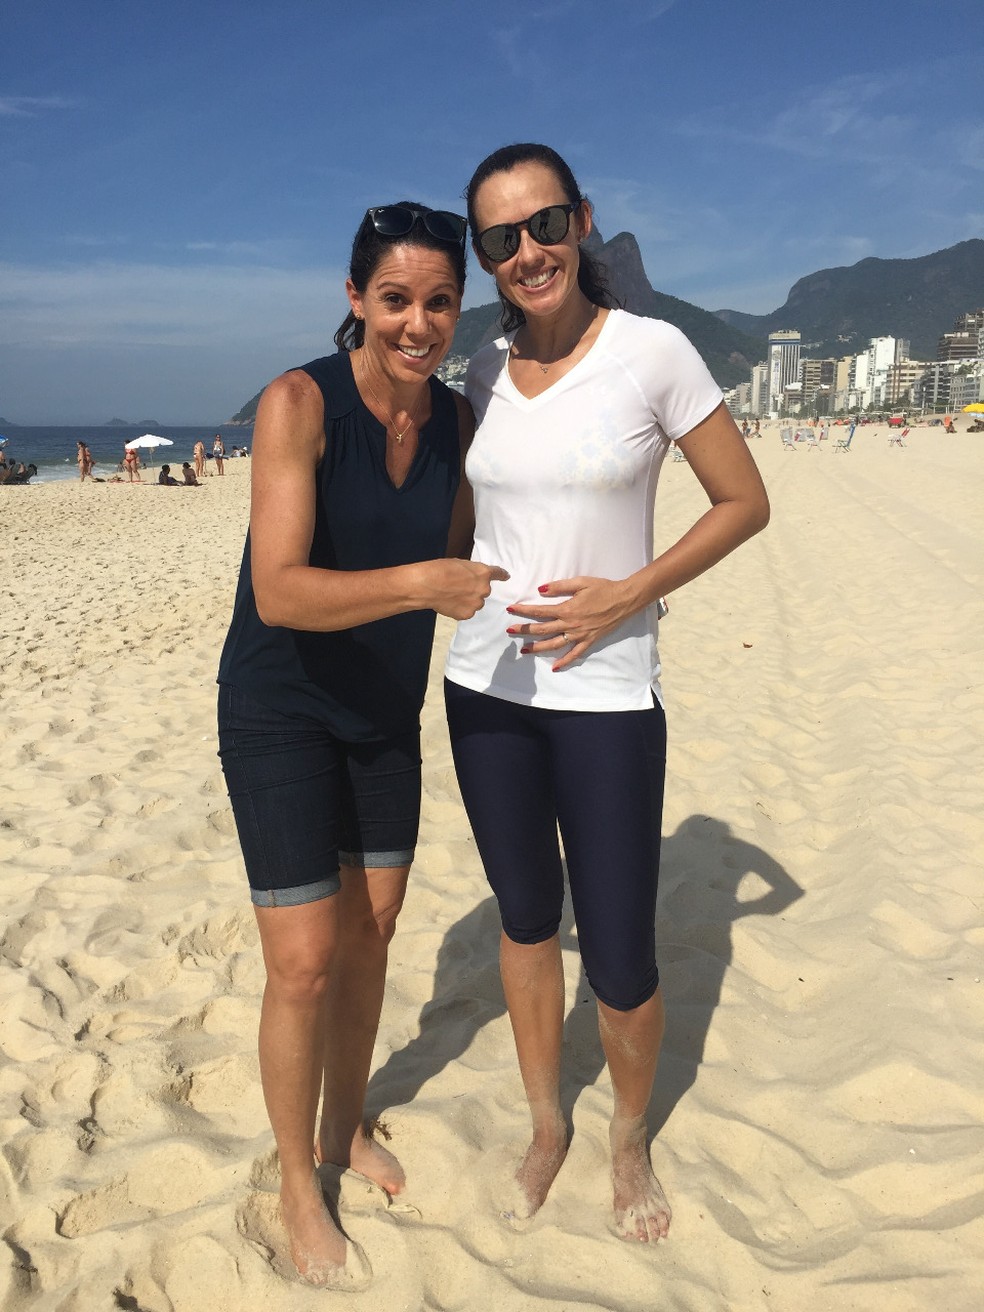 Comentarista da Globo, Sandra Pires conversa com Talita, craque do vôlei de praia (Foto: Mônica Agra/TV Globo)